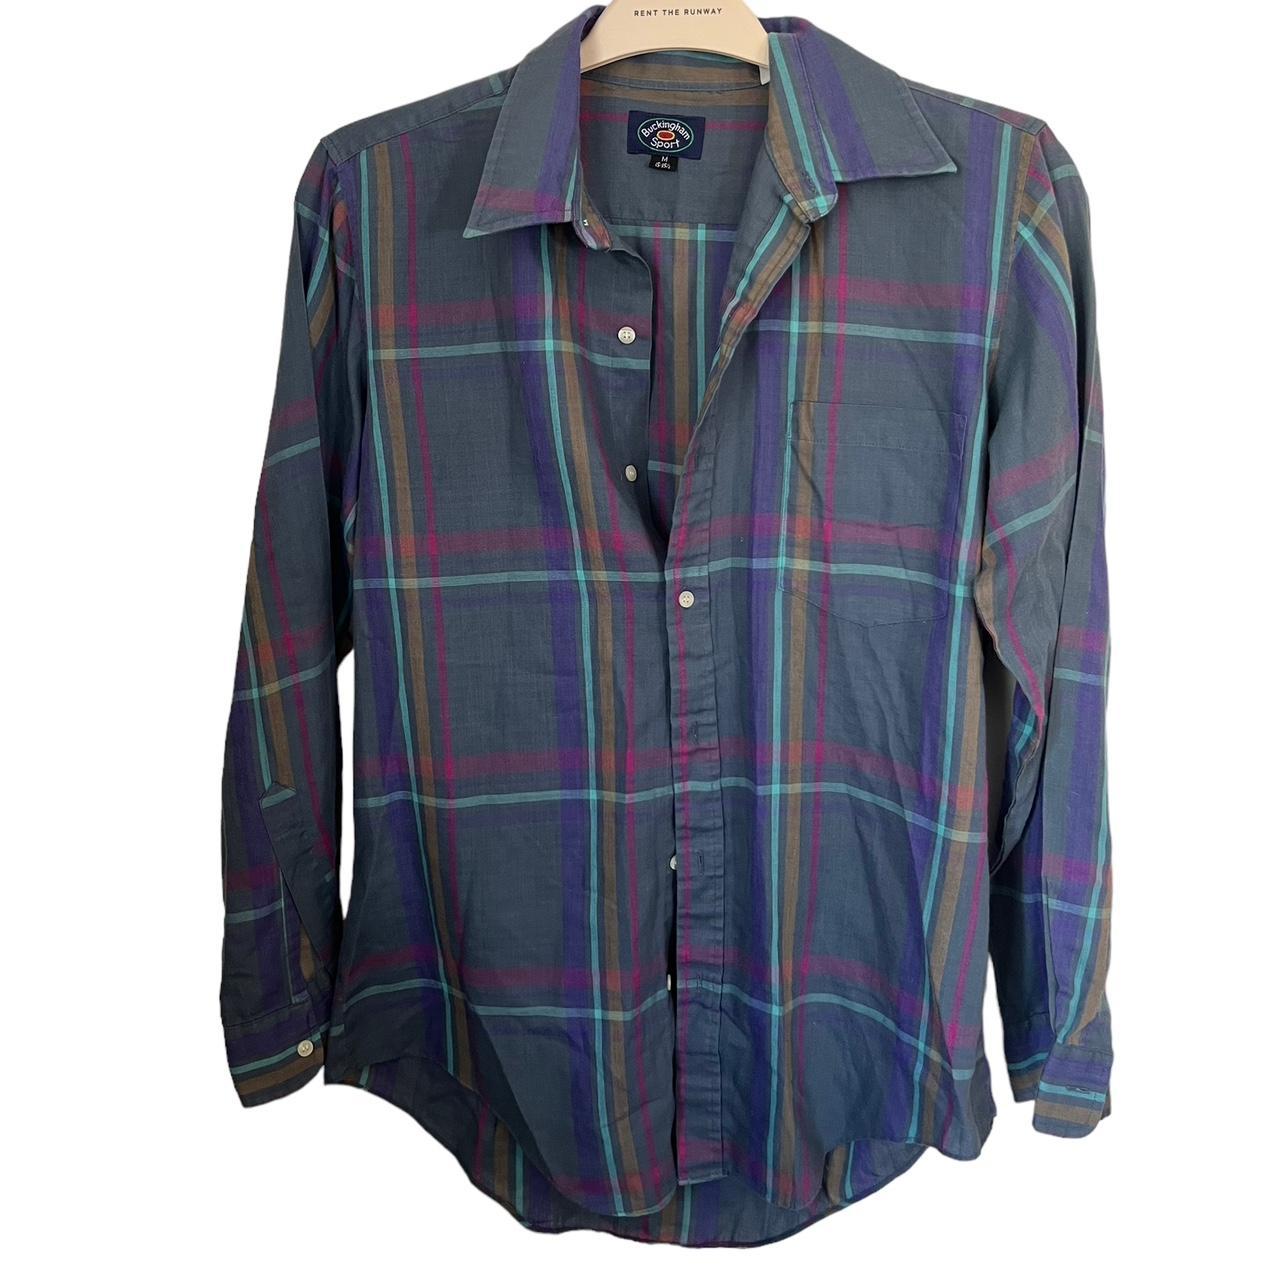 Vintage Men's Button-Up Shirt Era: 80's or... - Depop